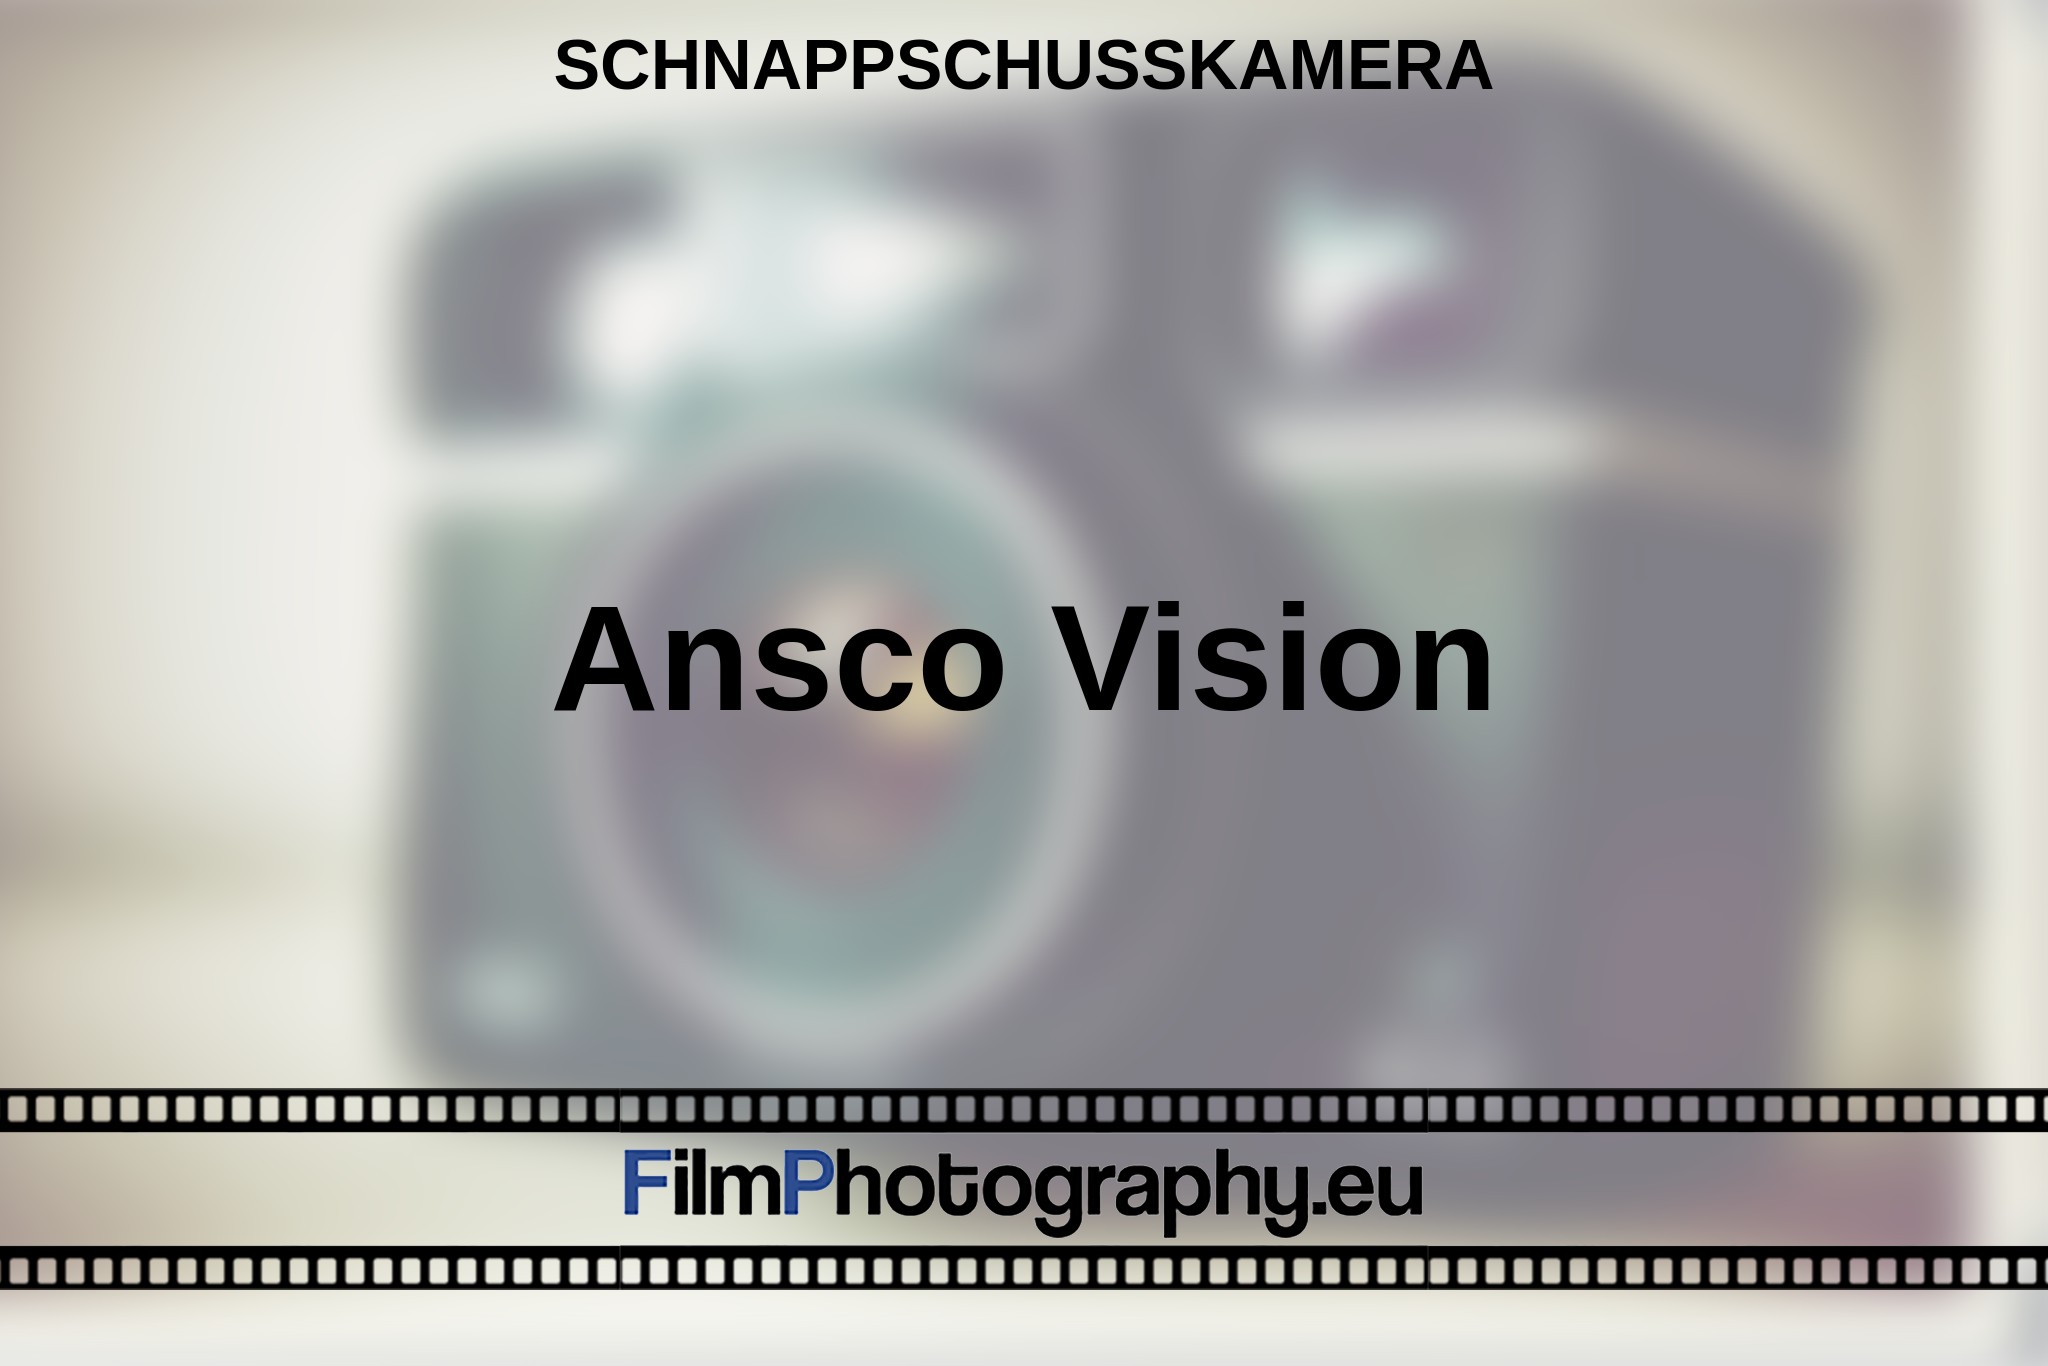 ansco-vision-schnappschusskamera-bnv.jpg